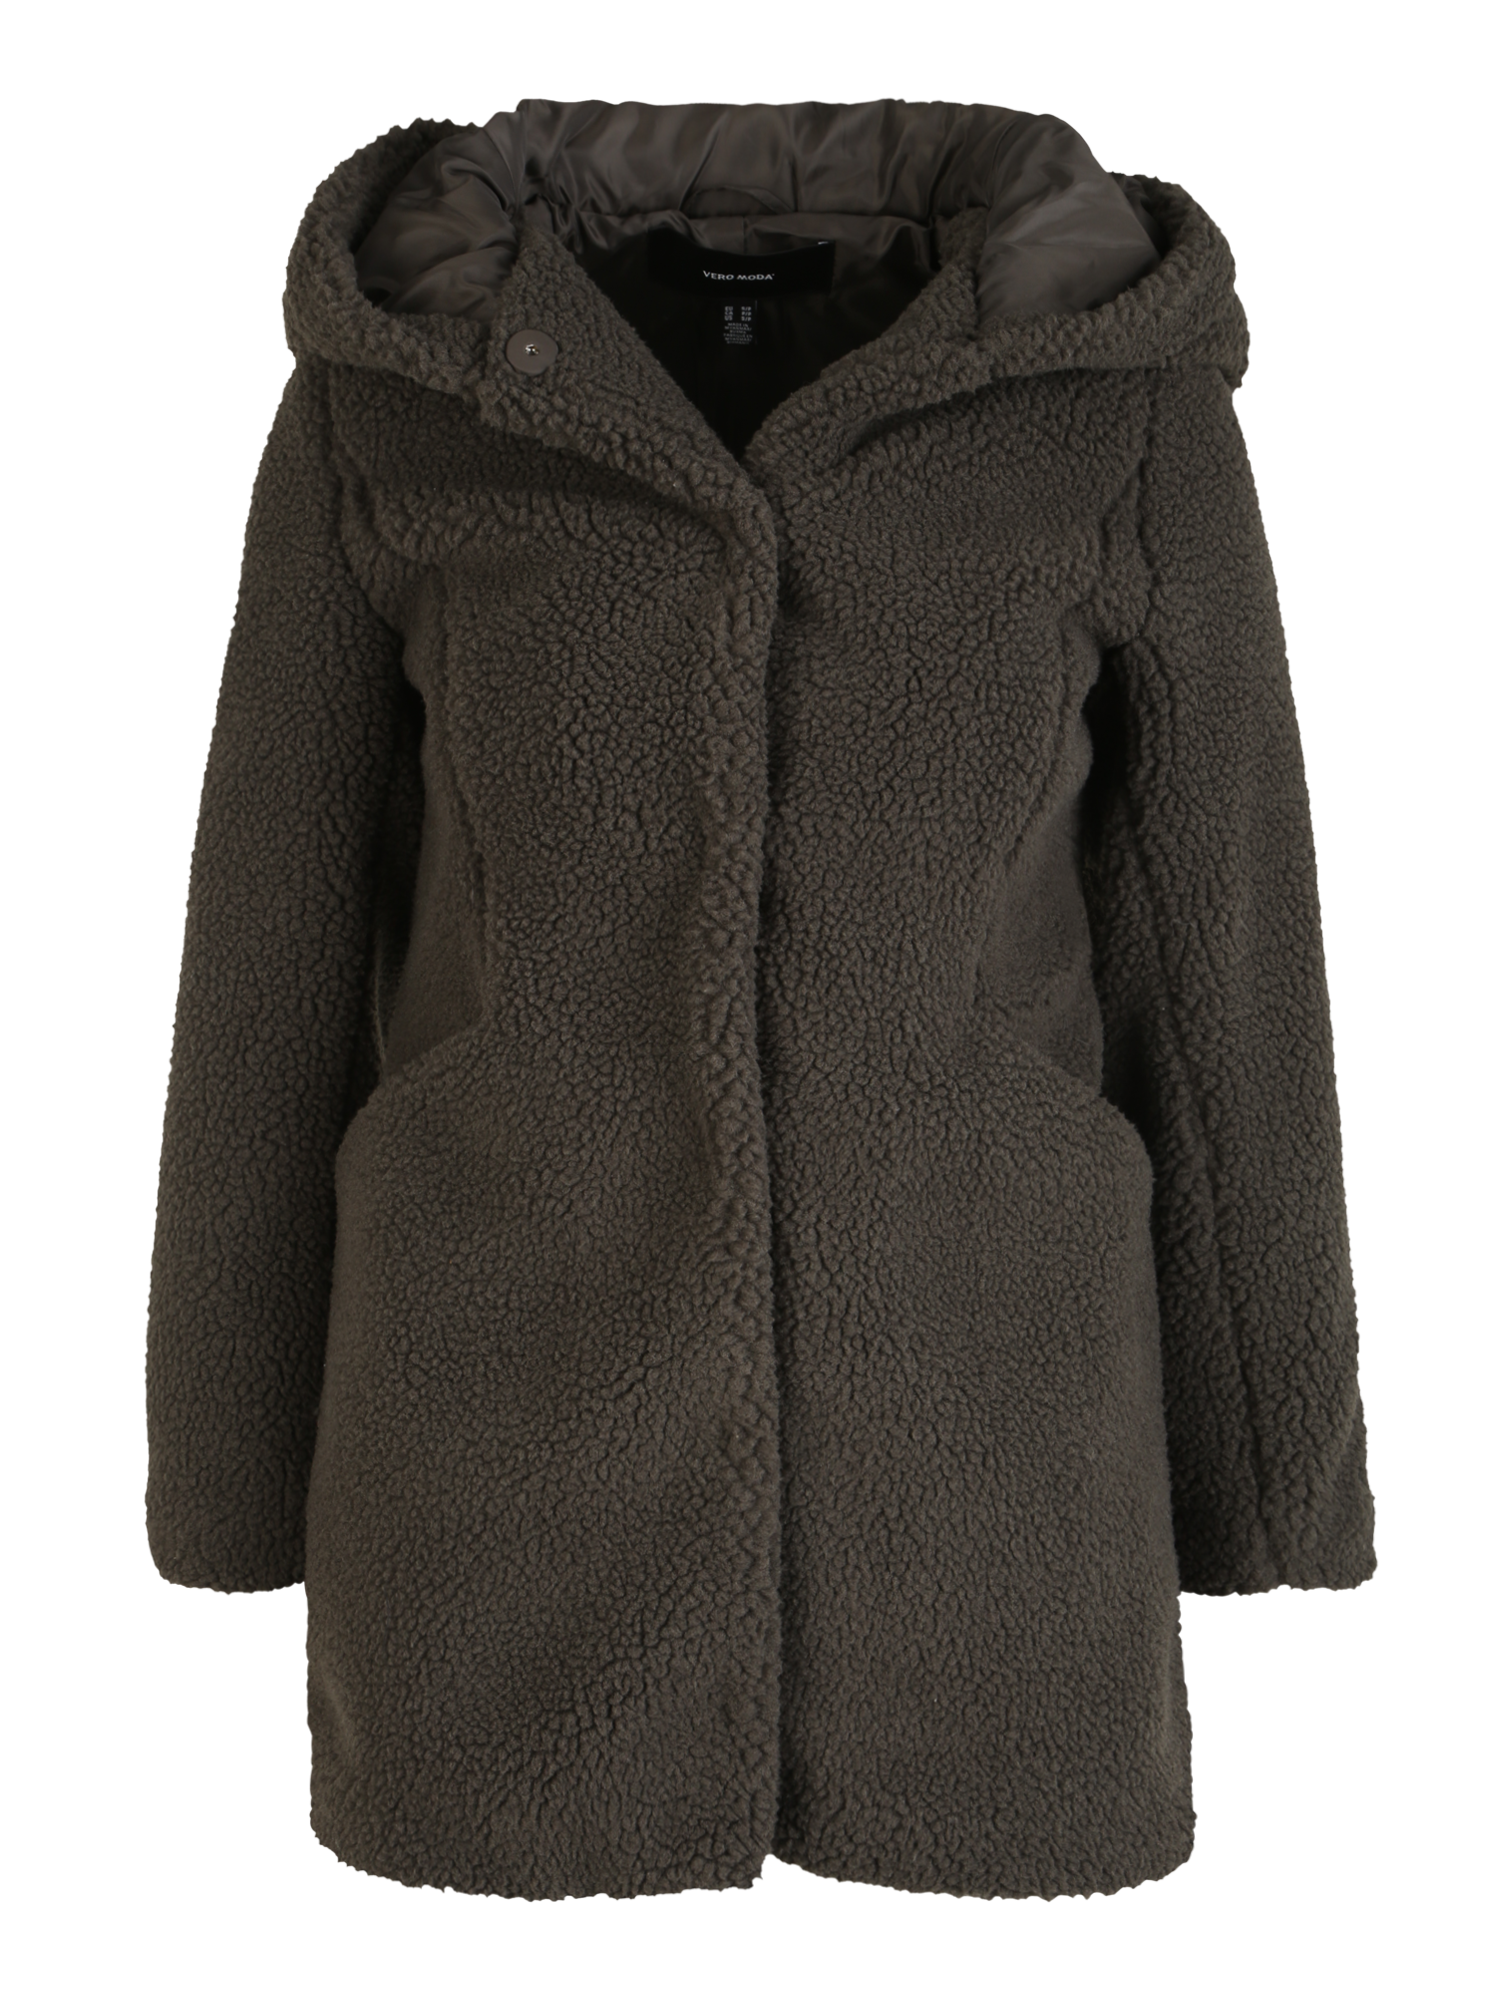 Bardziej zrównoważony Odzież Vero Moda Petite Płaszcz zimowy DONNALOT w kolorze Ciemnozielonym 